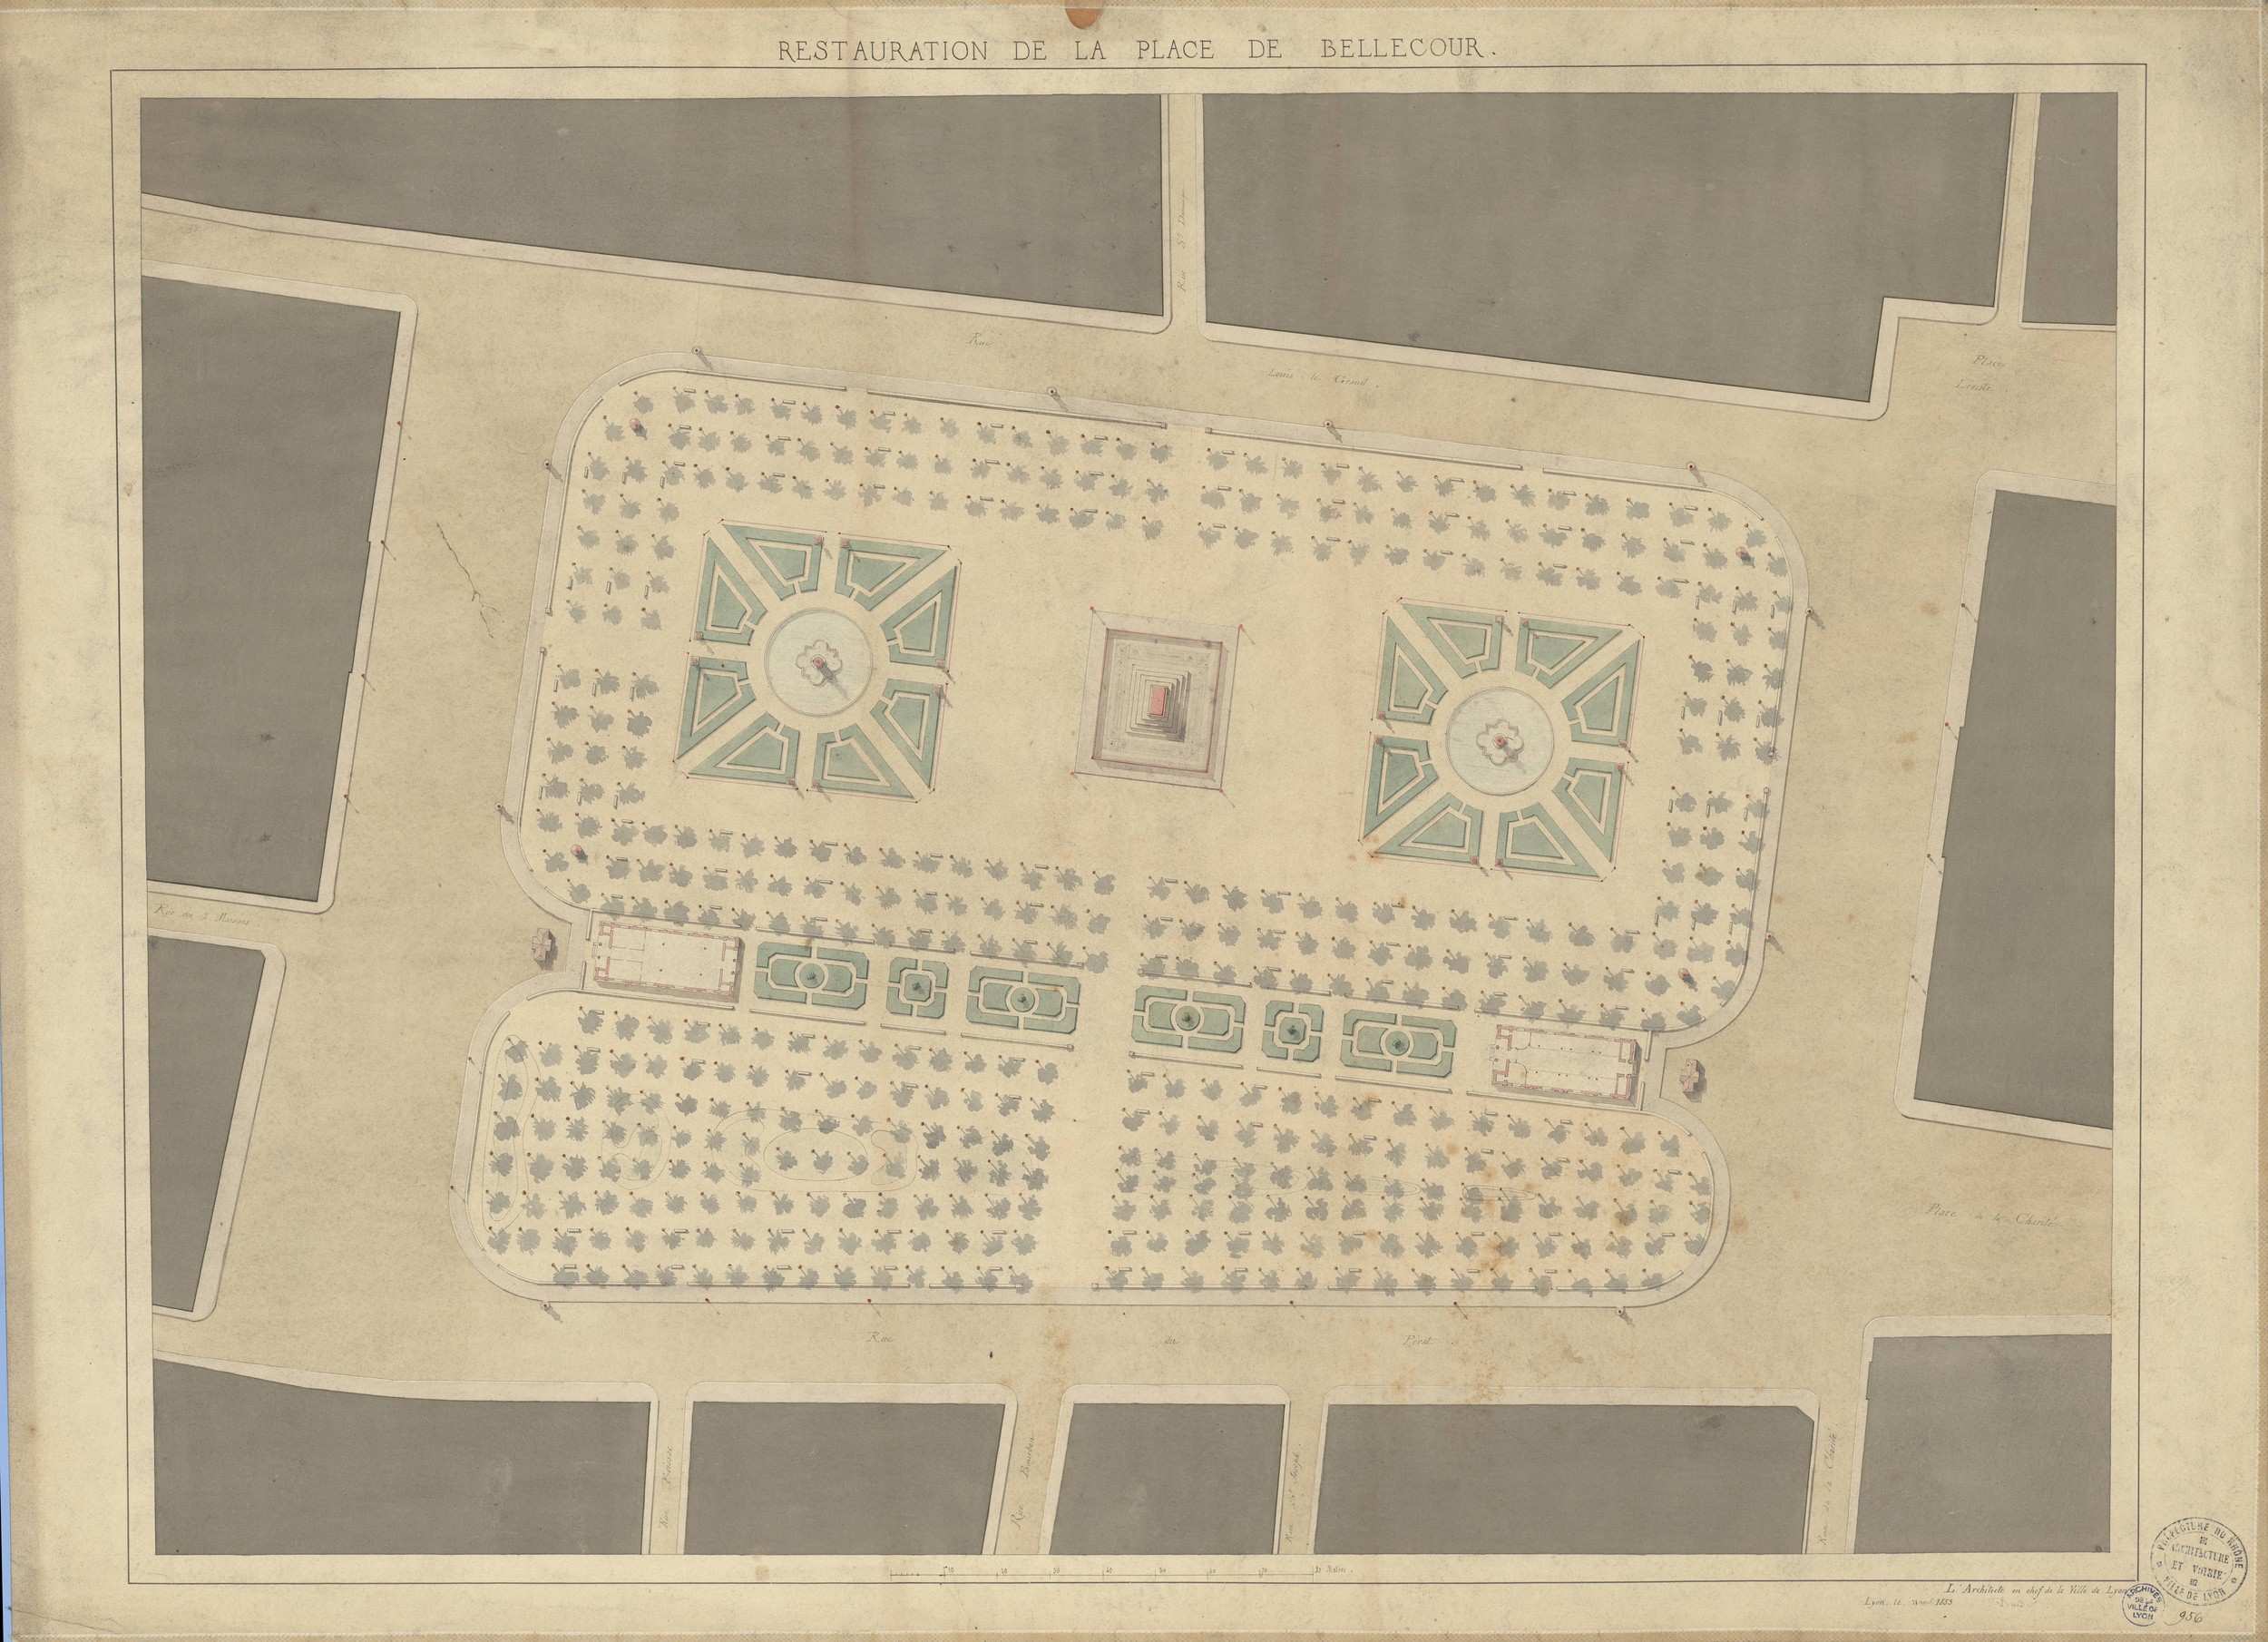 Restauration de la place de Bellecour : plan géométral rehaussé à l'aquarelle (1853, cote : 2S/272)